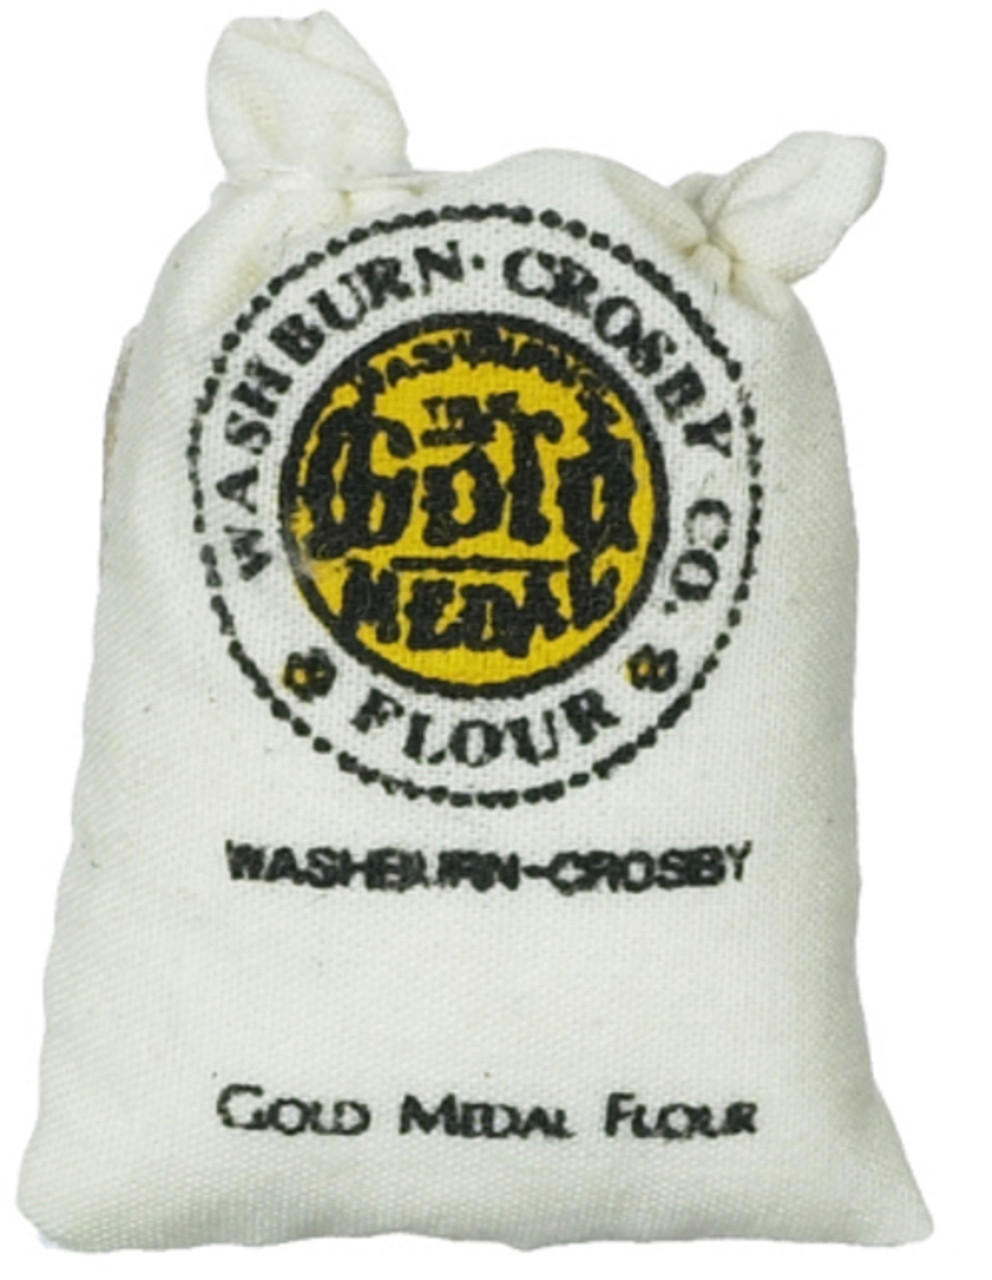 Sack of Flour